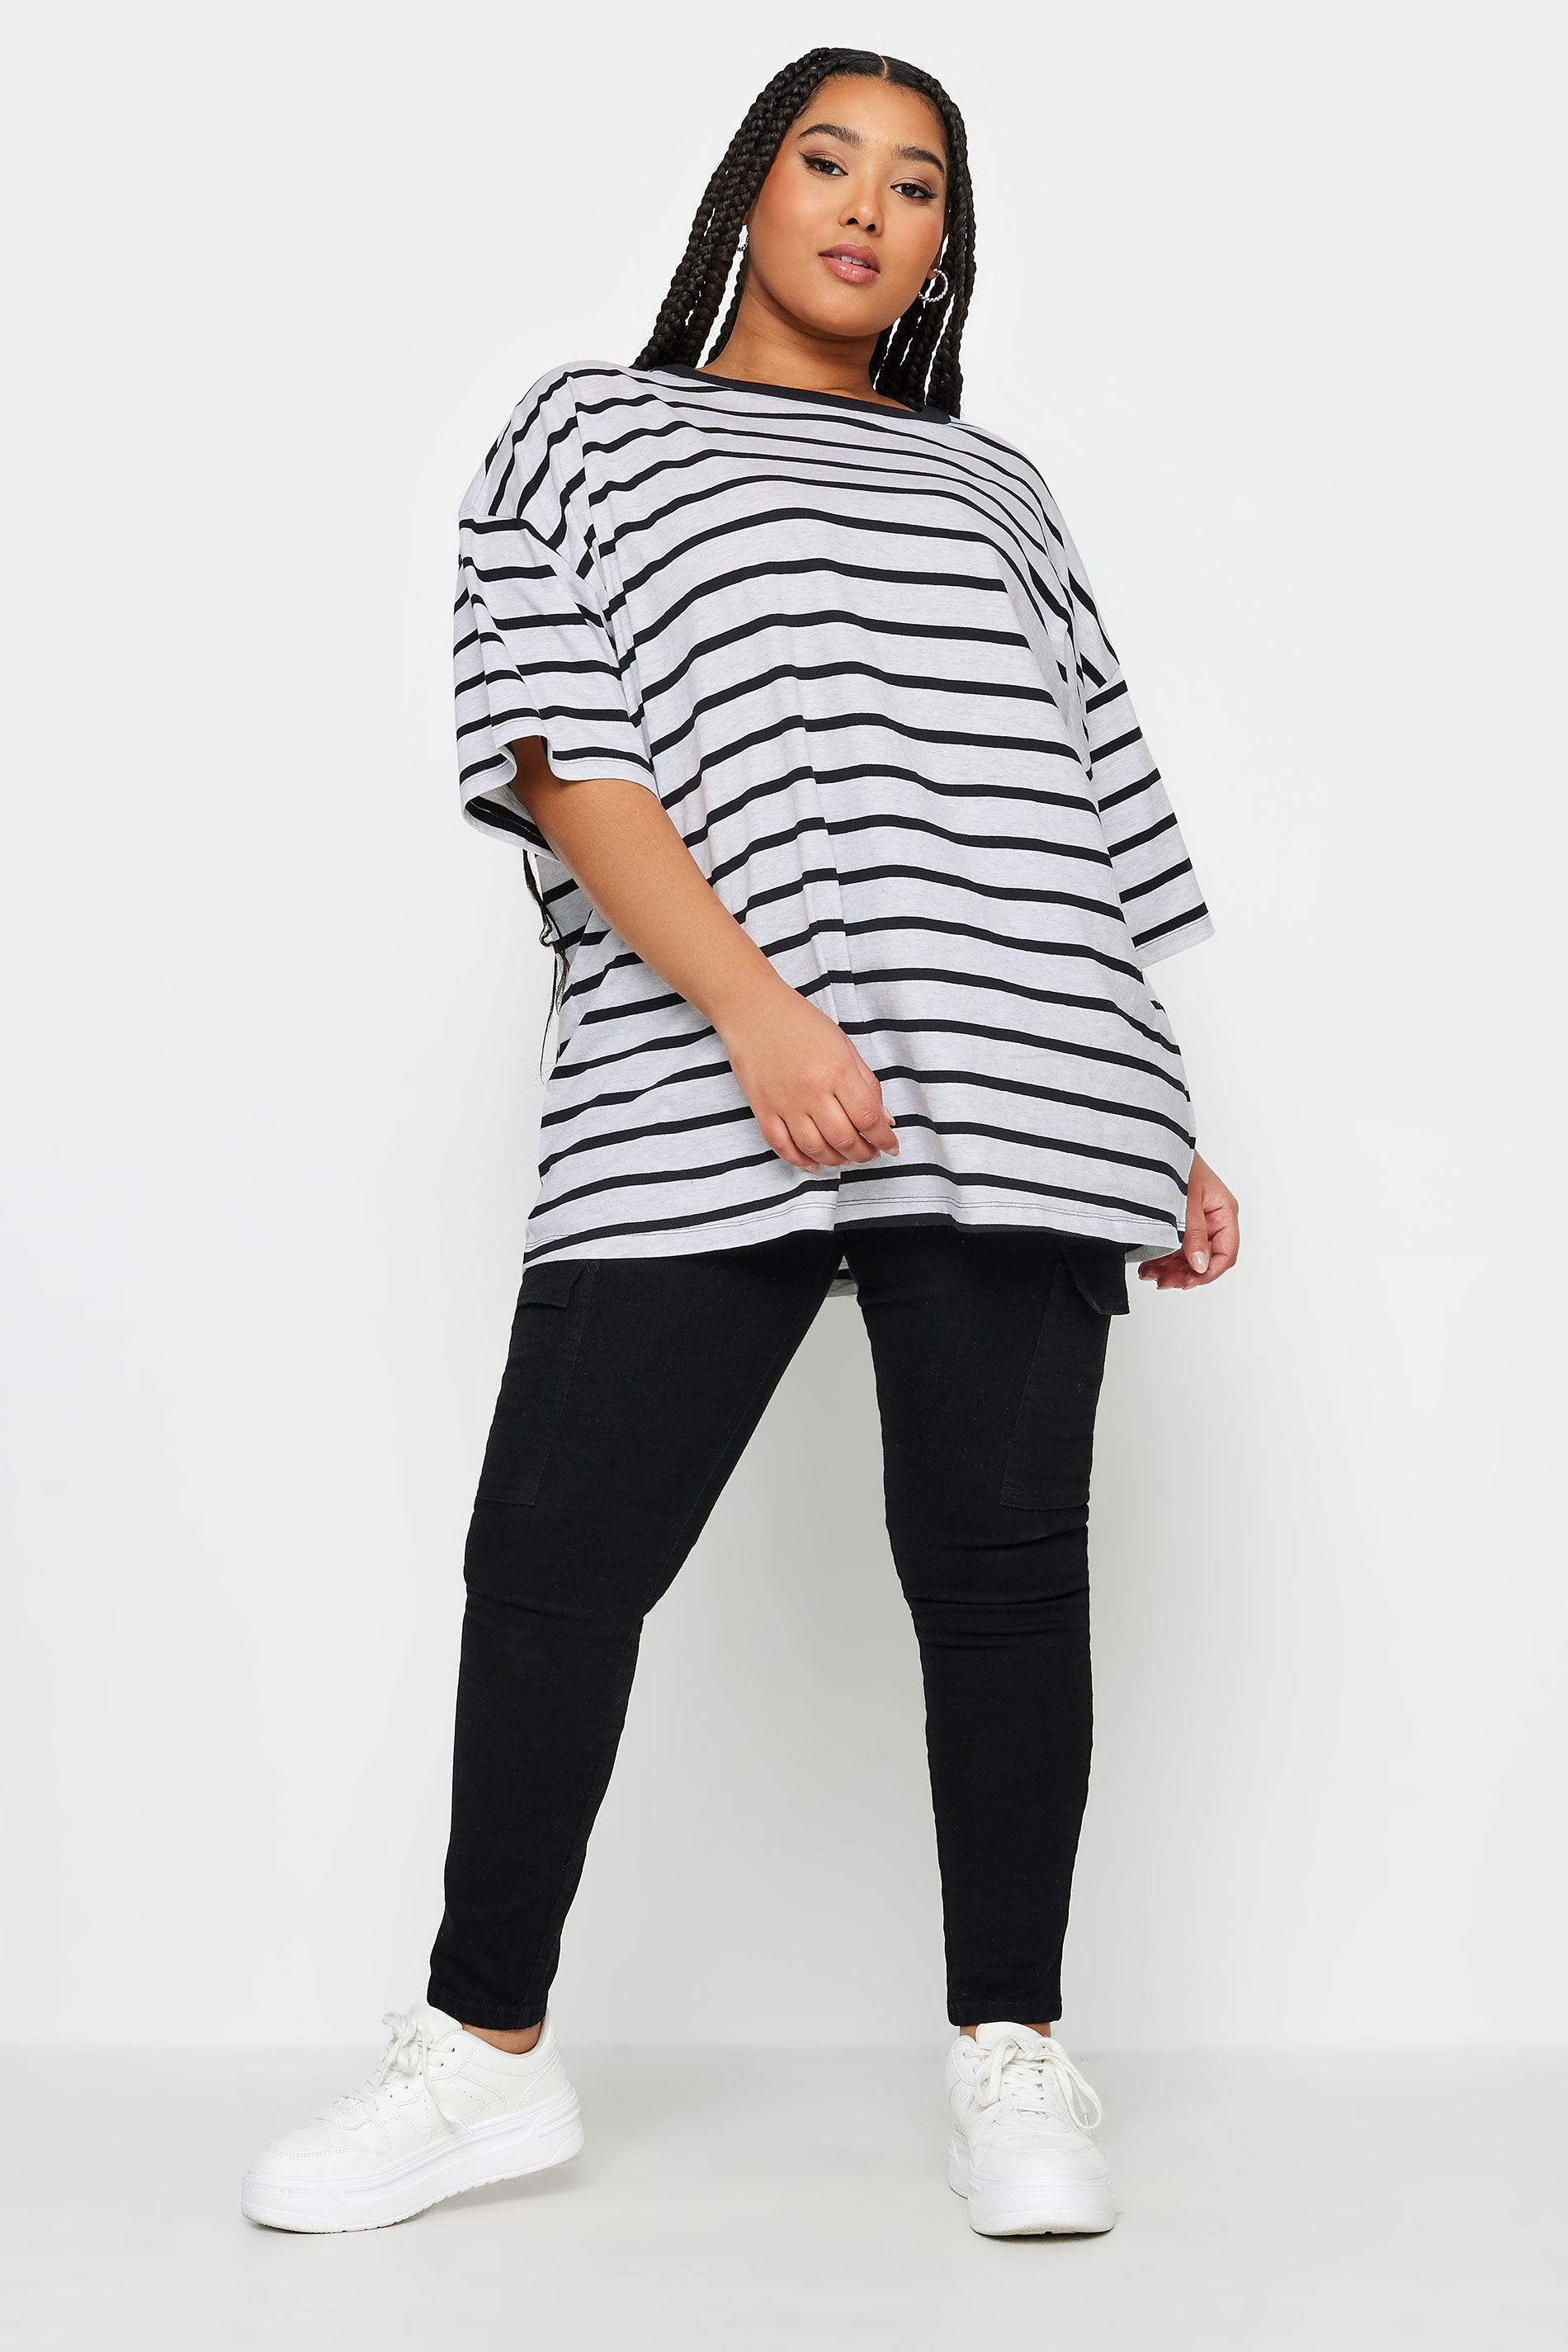 YOURS Plus Size Light Grey Stripe Oversized Boxy T-Shirt | Yours Clothing 2